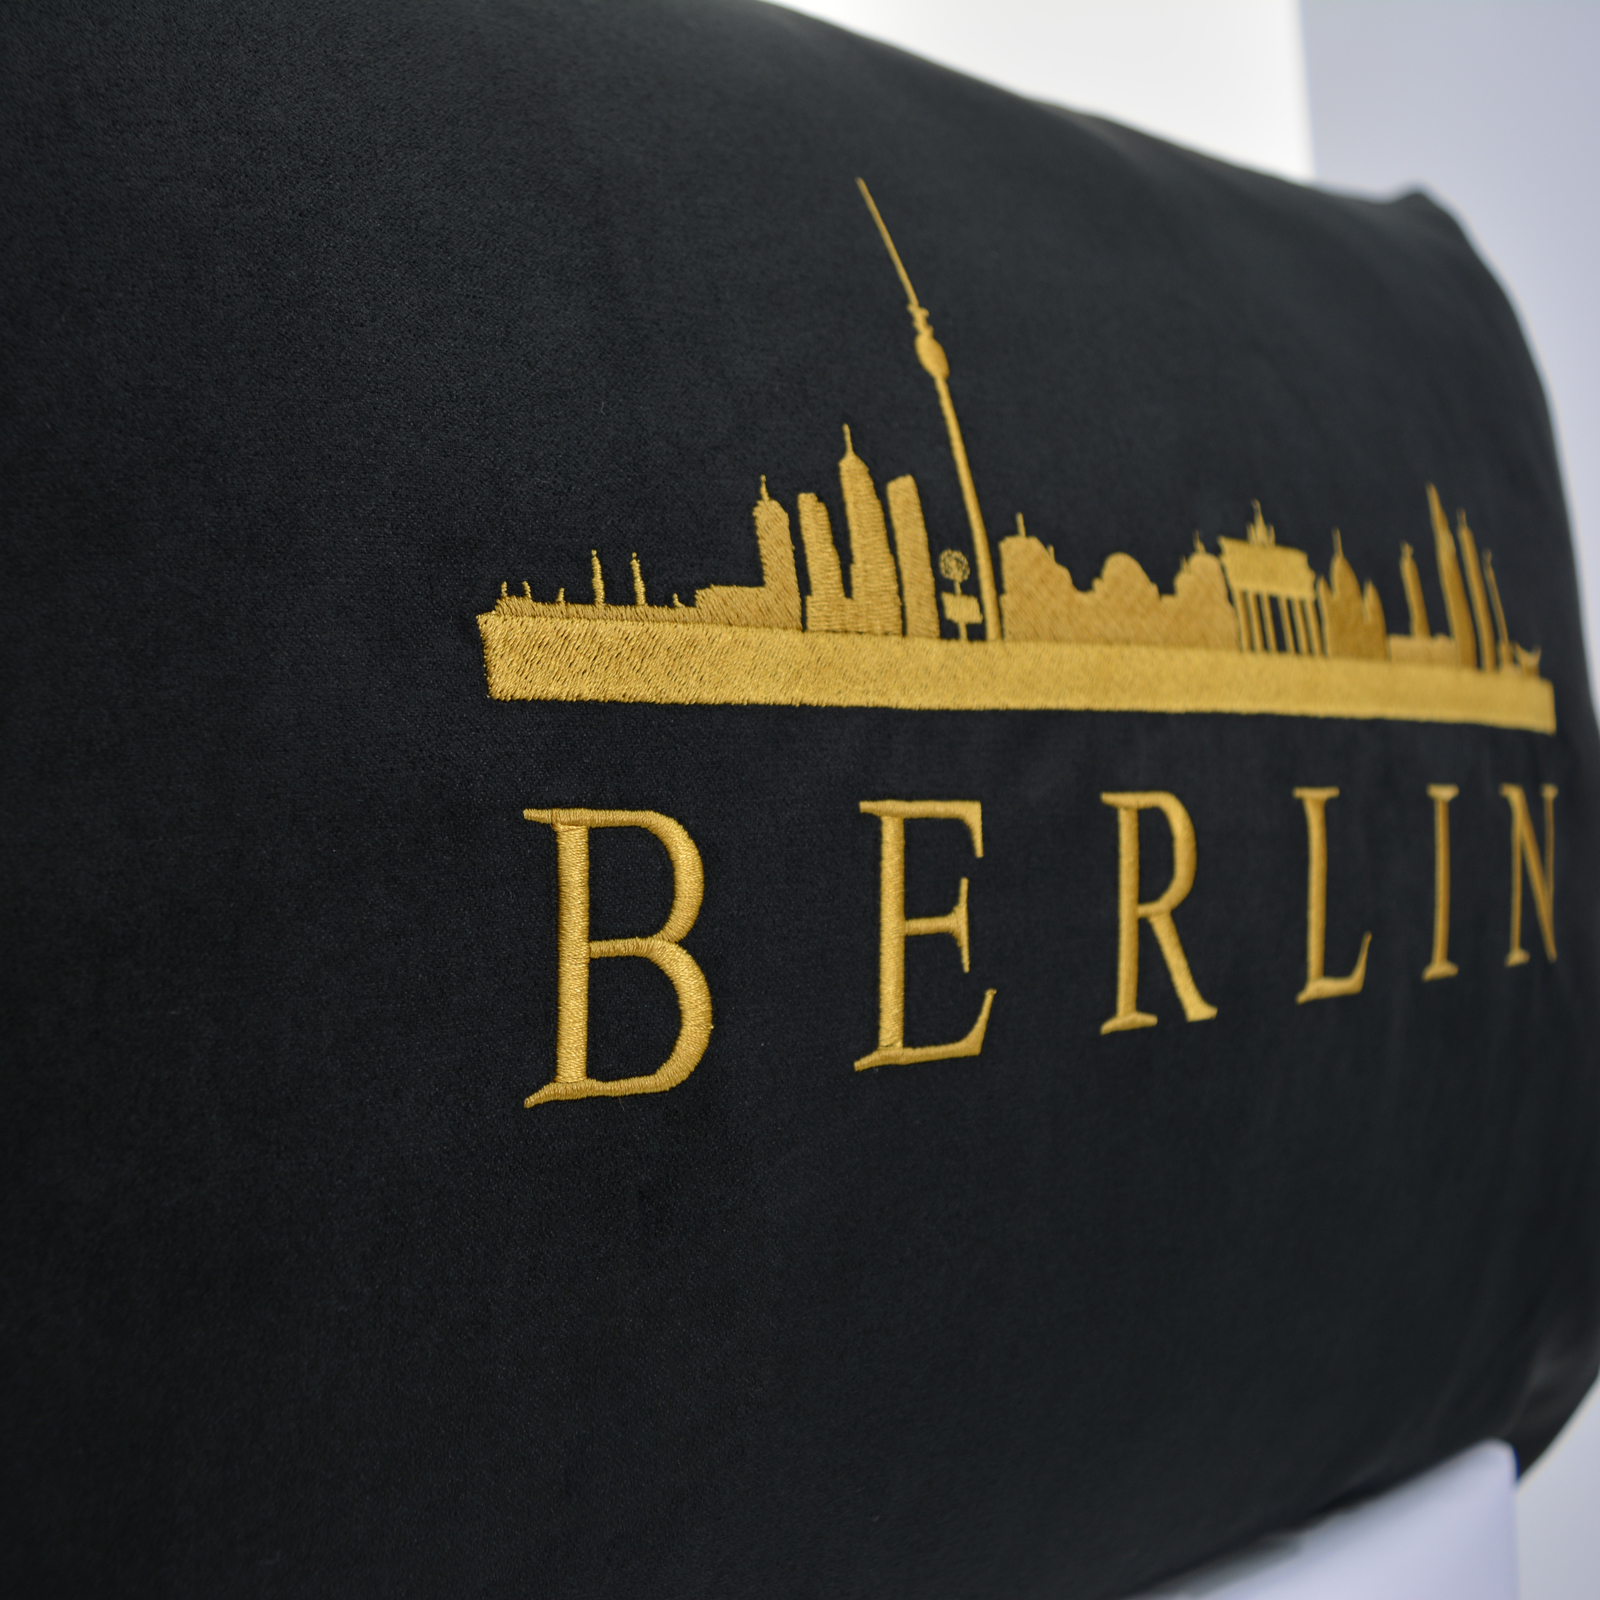 Skyline_Berlin